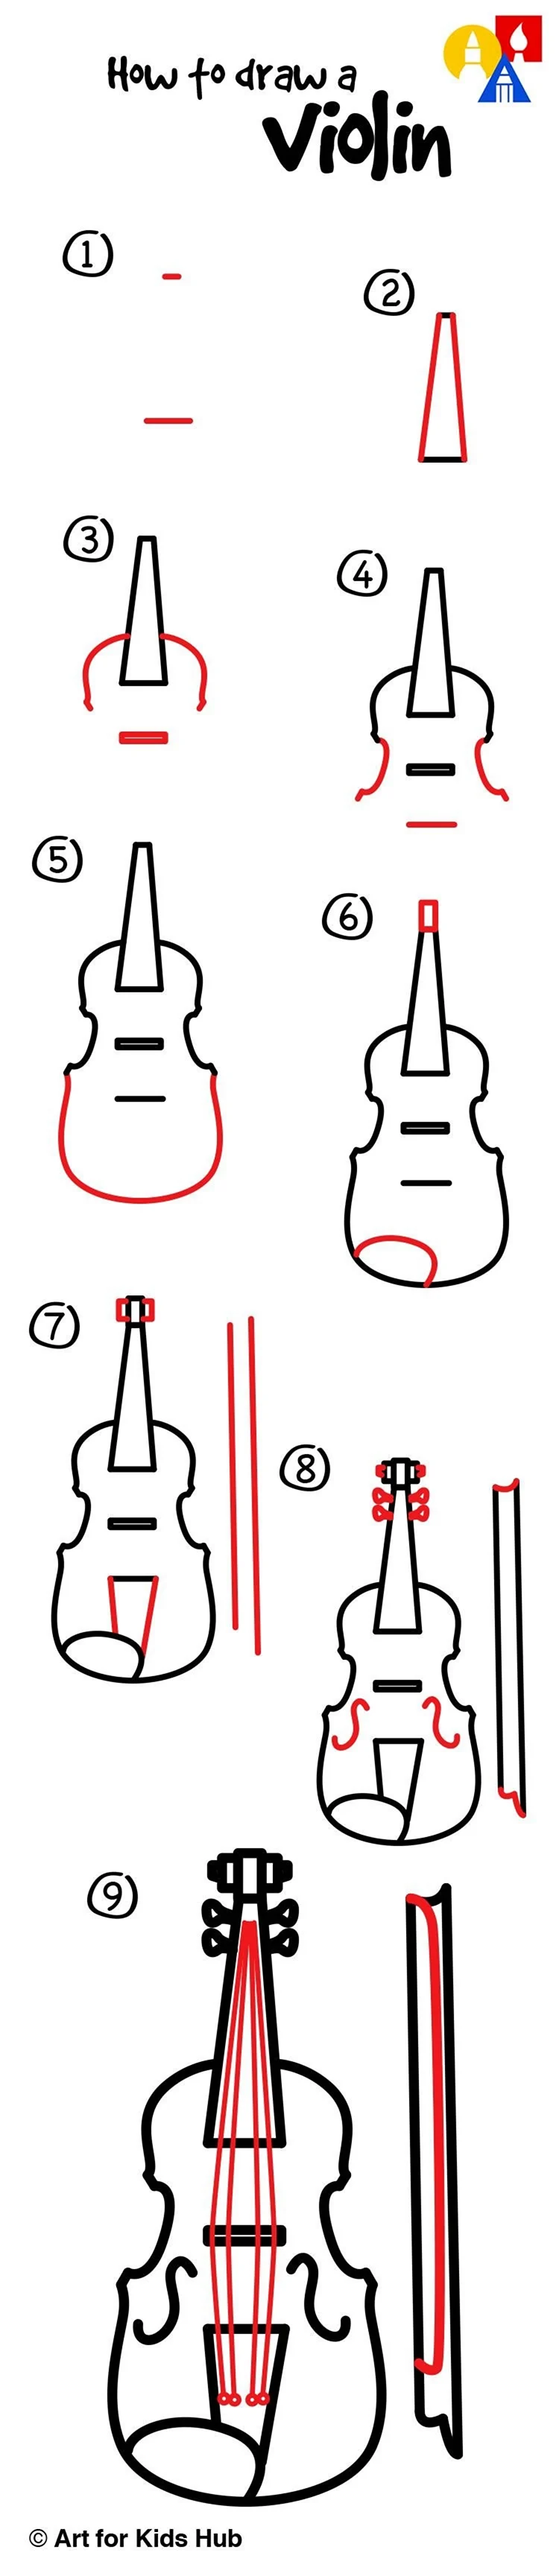 Пошаговое рисование скрипки